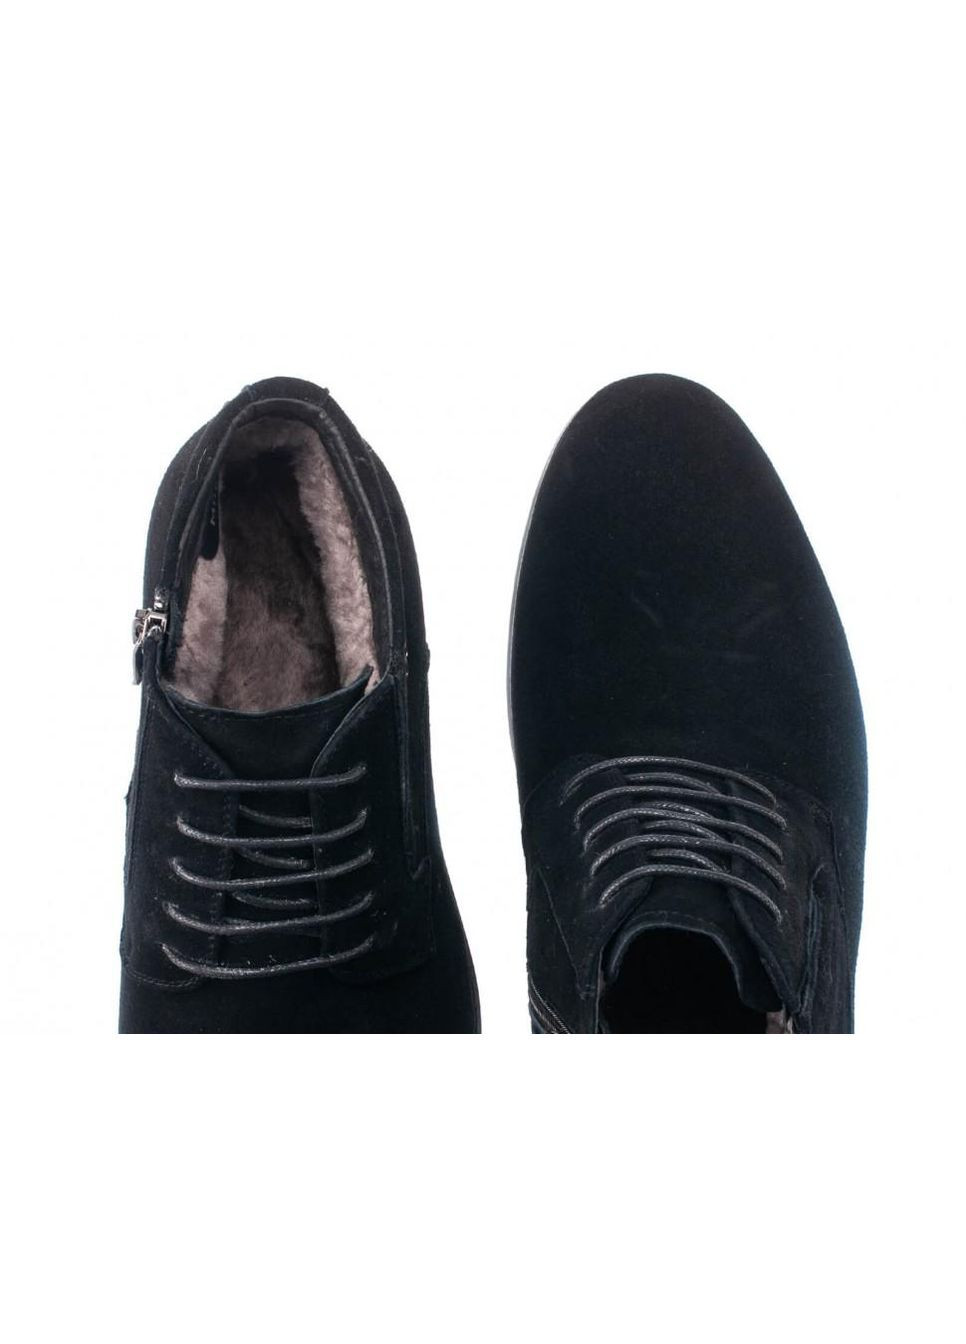 Черные зимние ботинки 7194152 цвет черный Dan Marest